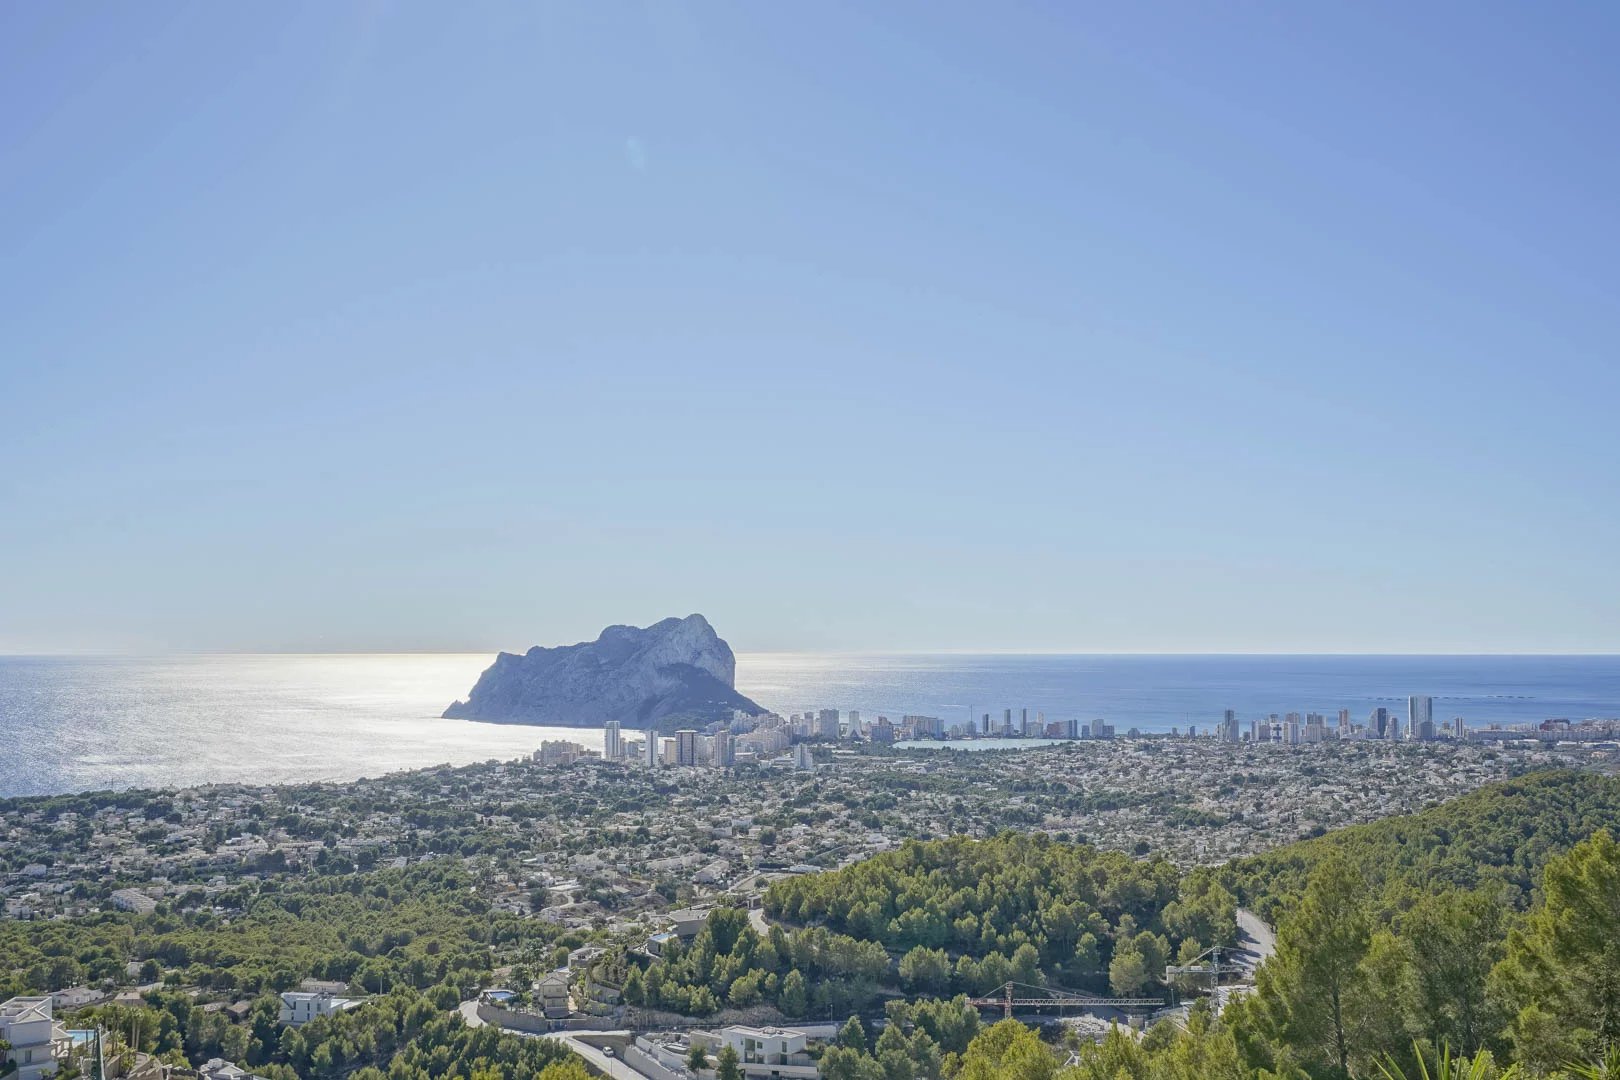 Villa for sale in Alicante 50